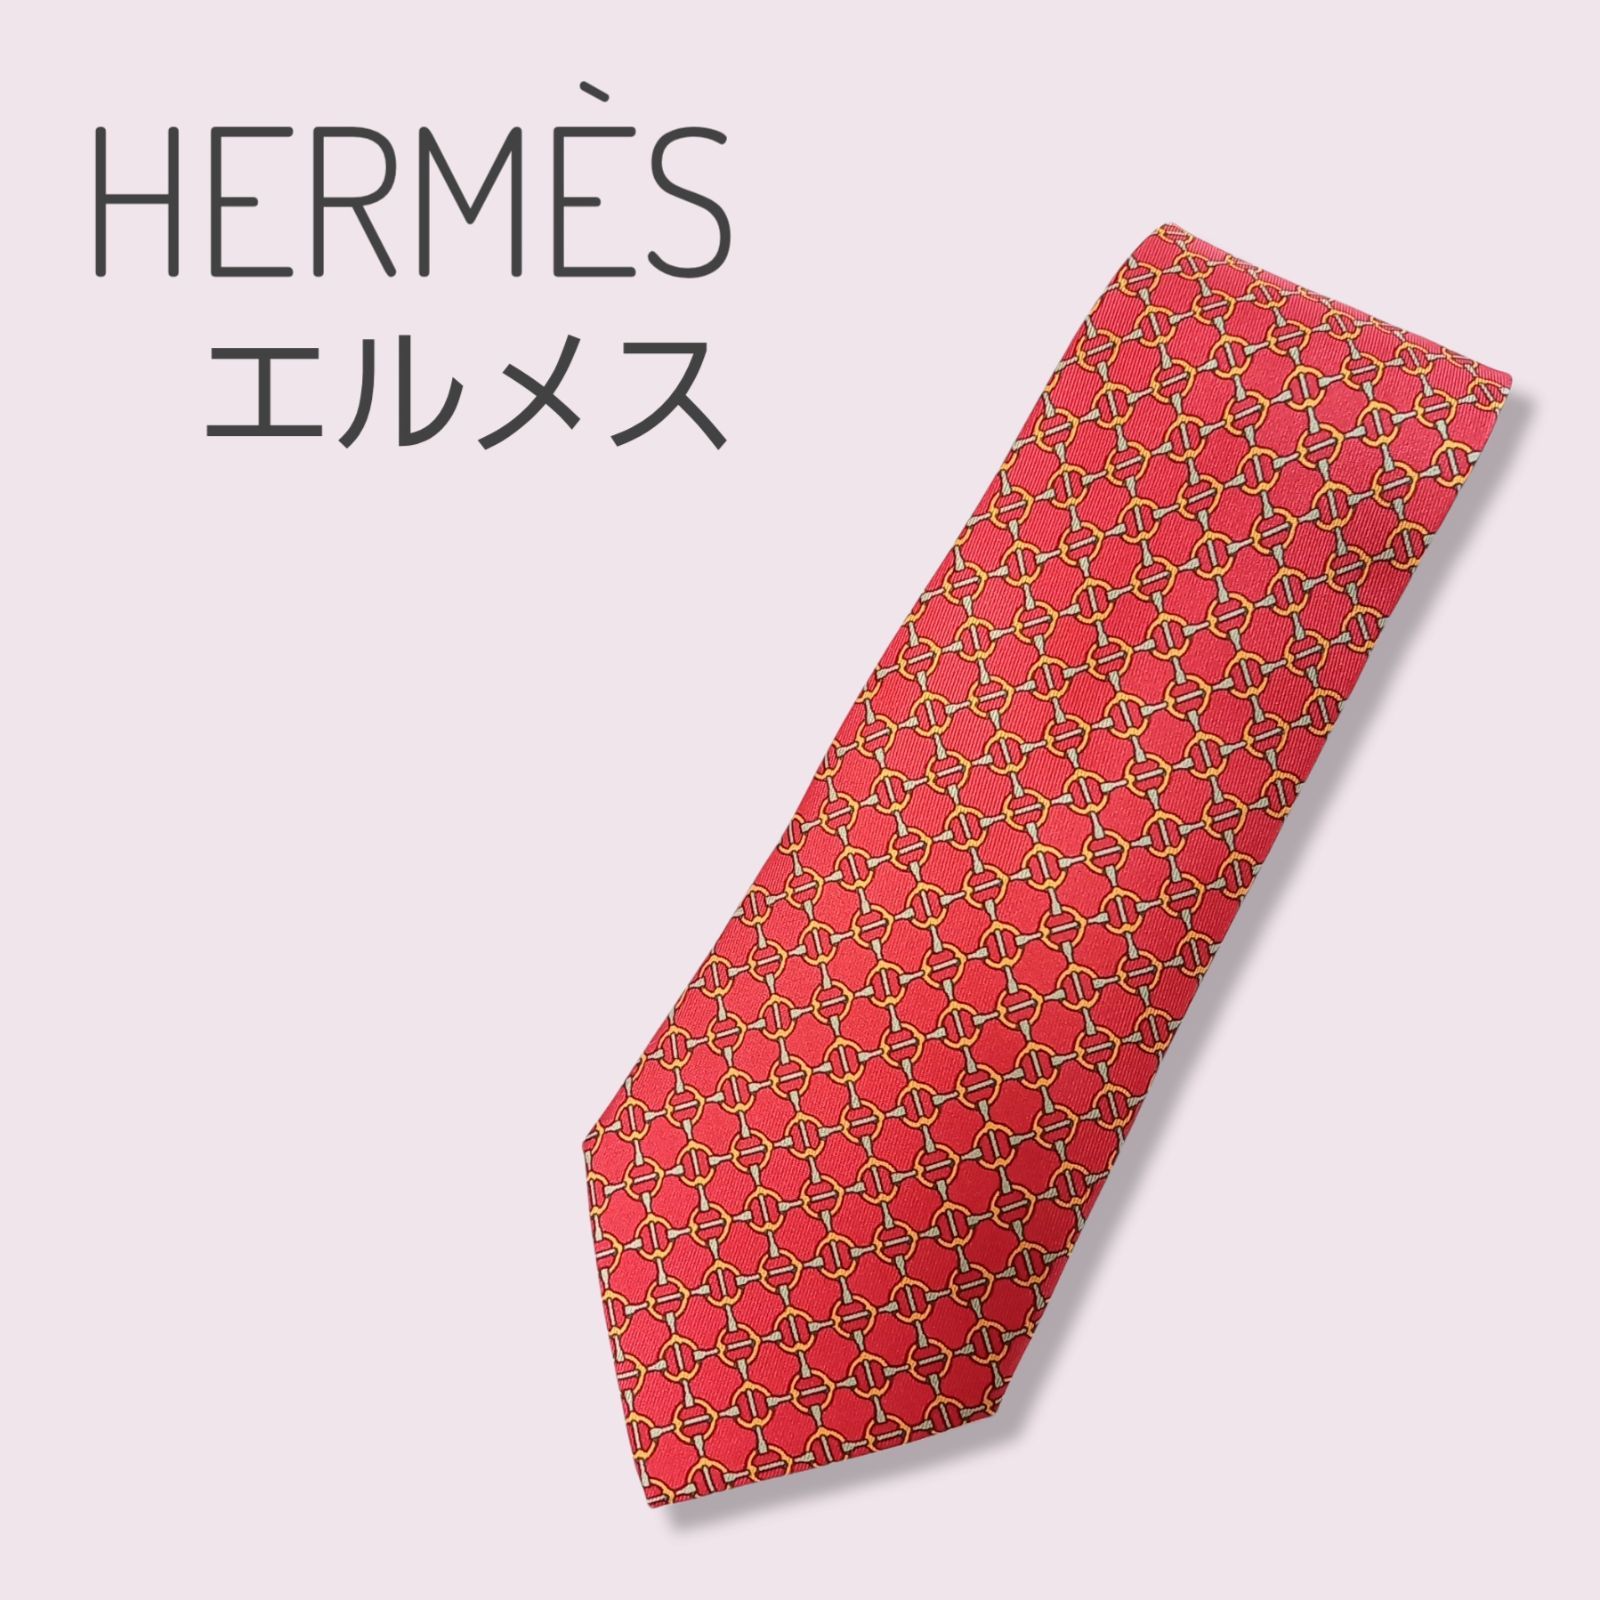 【ほぼ新品】エルメス HERMES ネクタイ レッド 赤 9cm幅